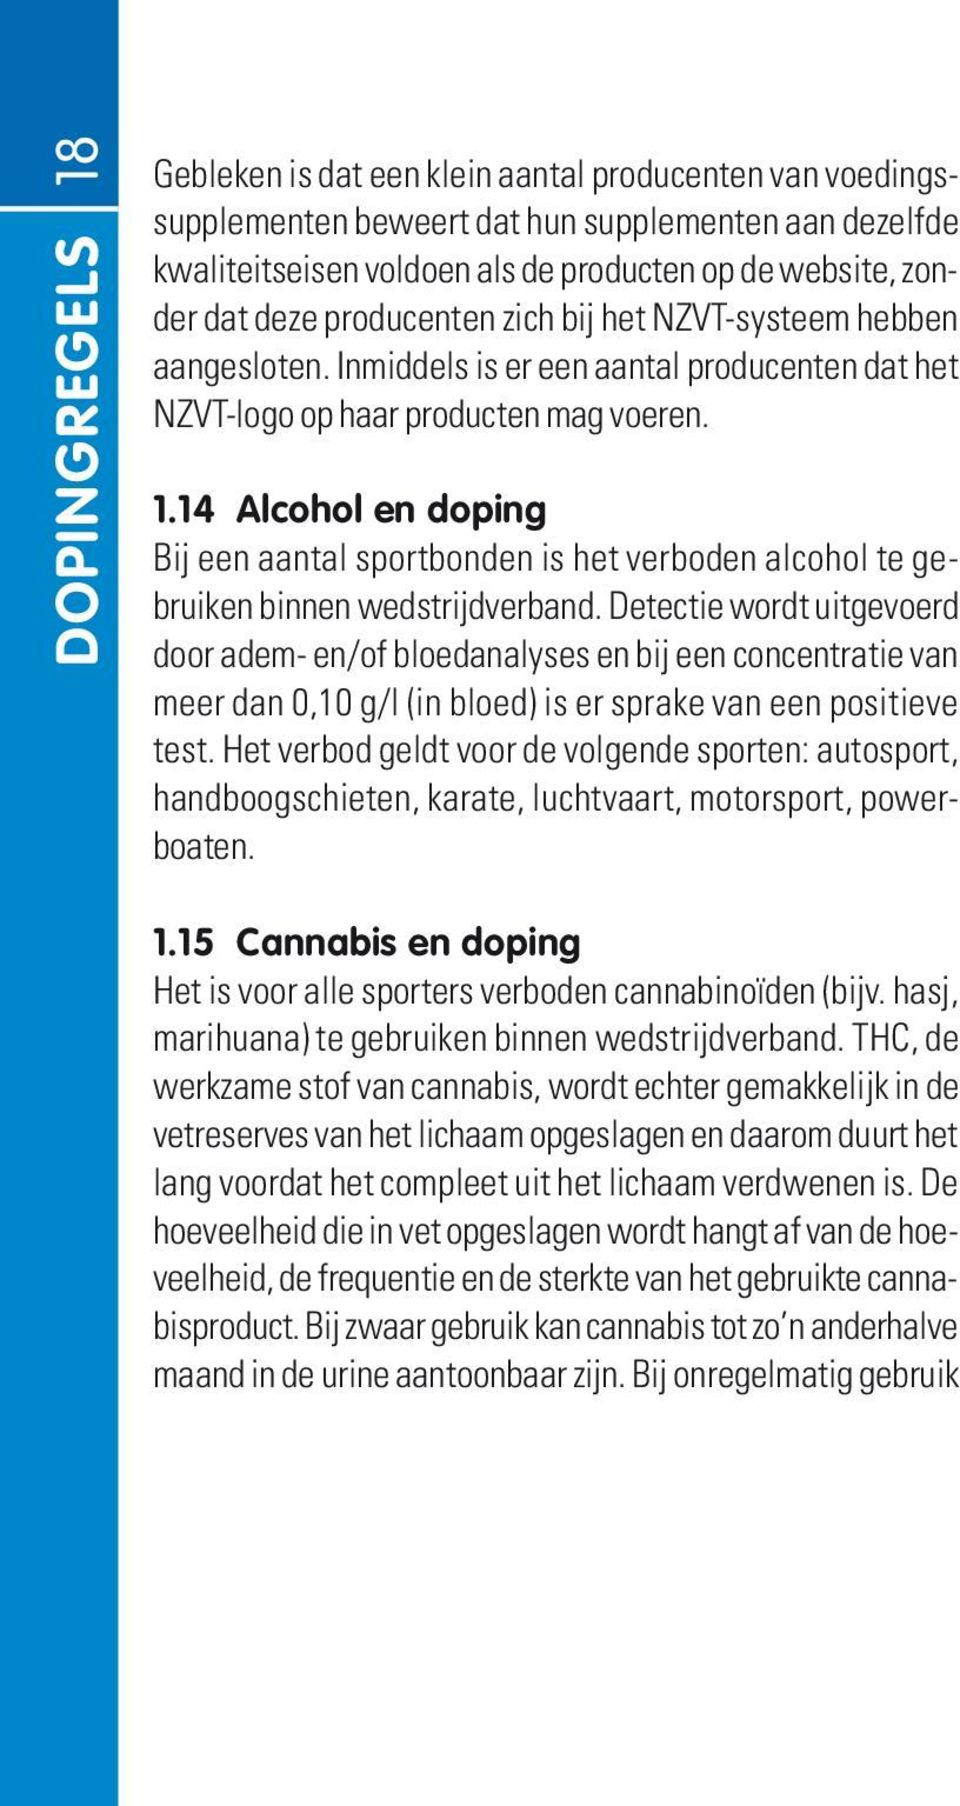 14 alcohol en doping Bij een aantal sportbonden is het verboden alcohol te gebruiken binnen wedstrijdverband.